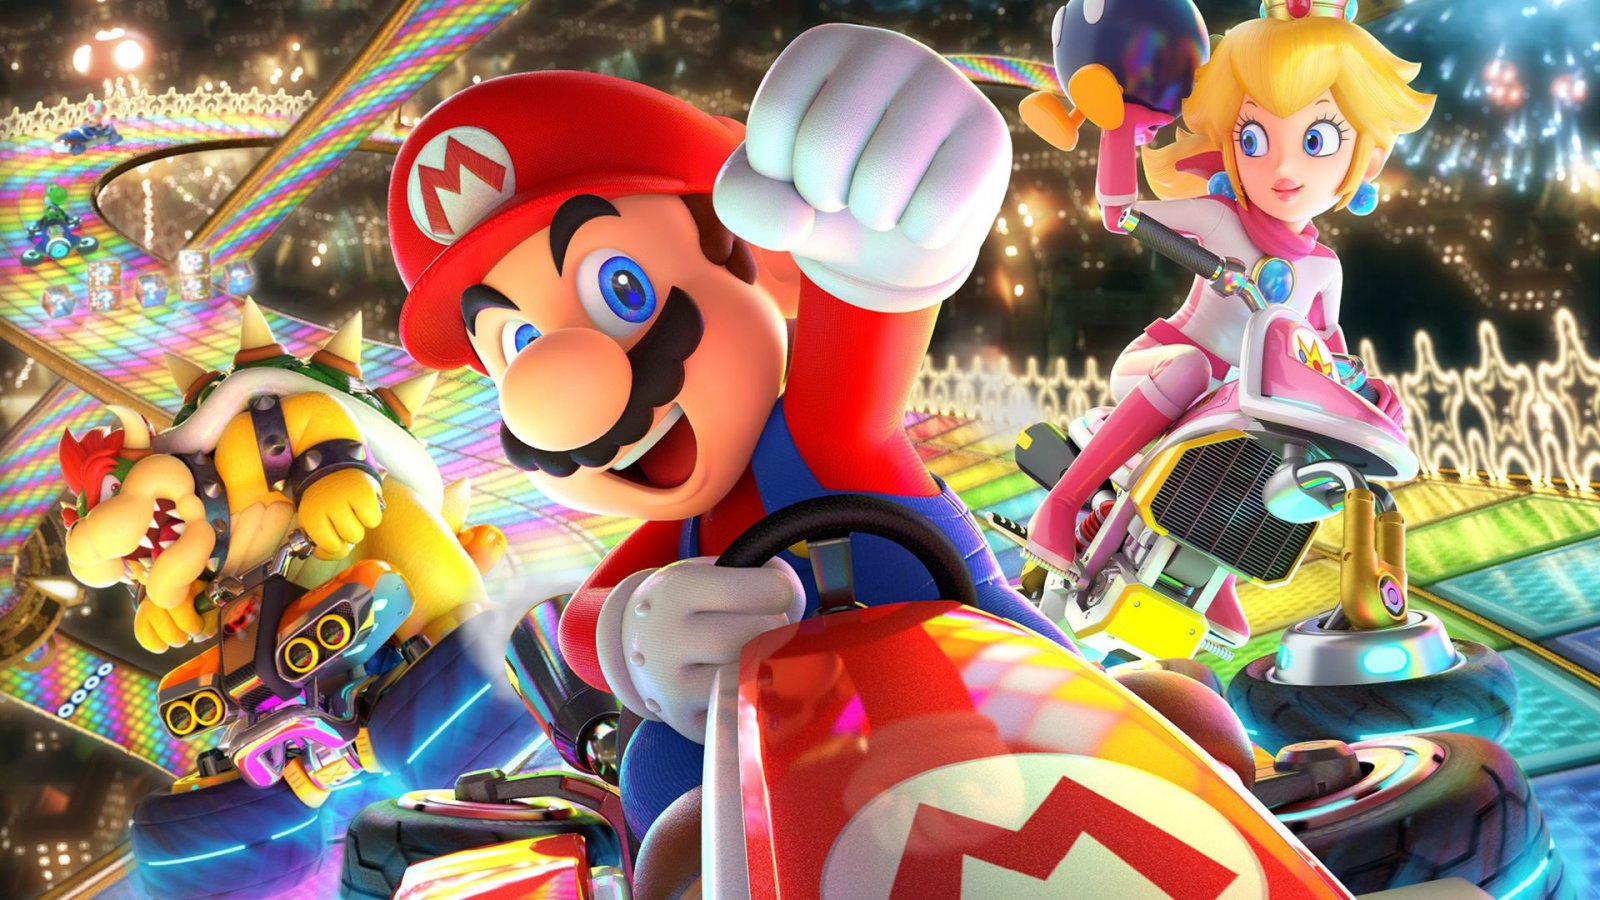 Classifica Nintendo eShop, Mario Kart 8 Deluxe è il gioco più venduto su Switch